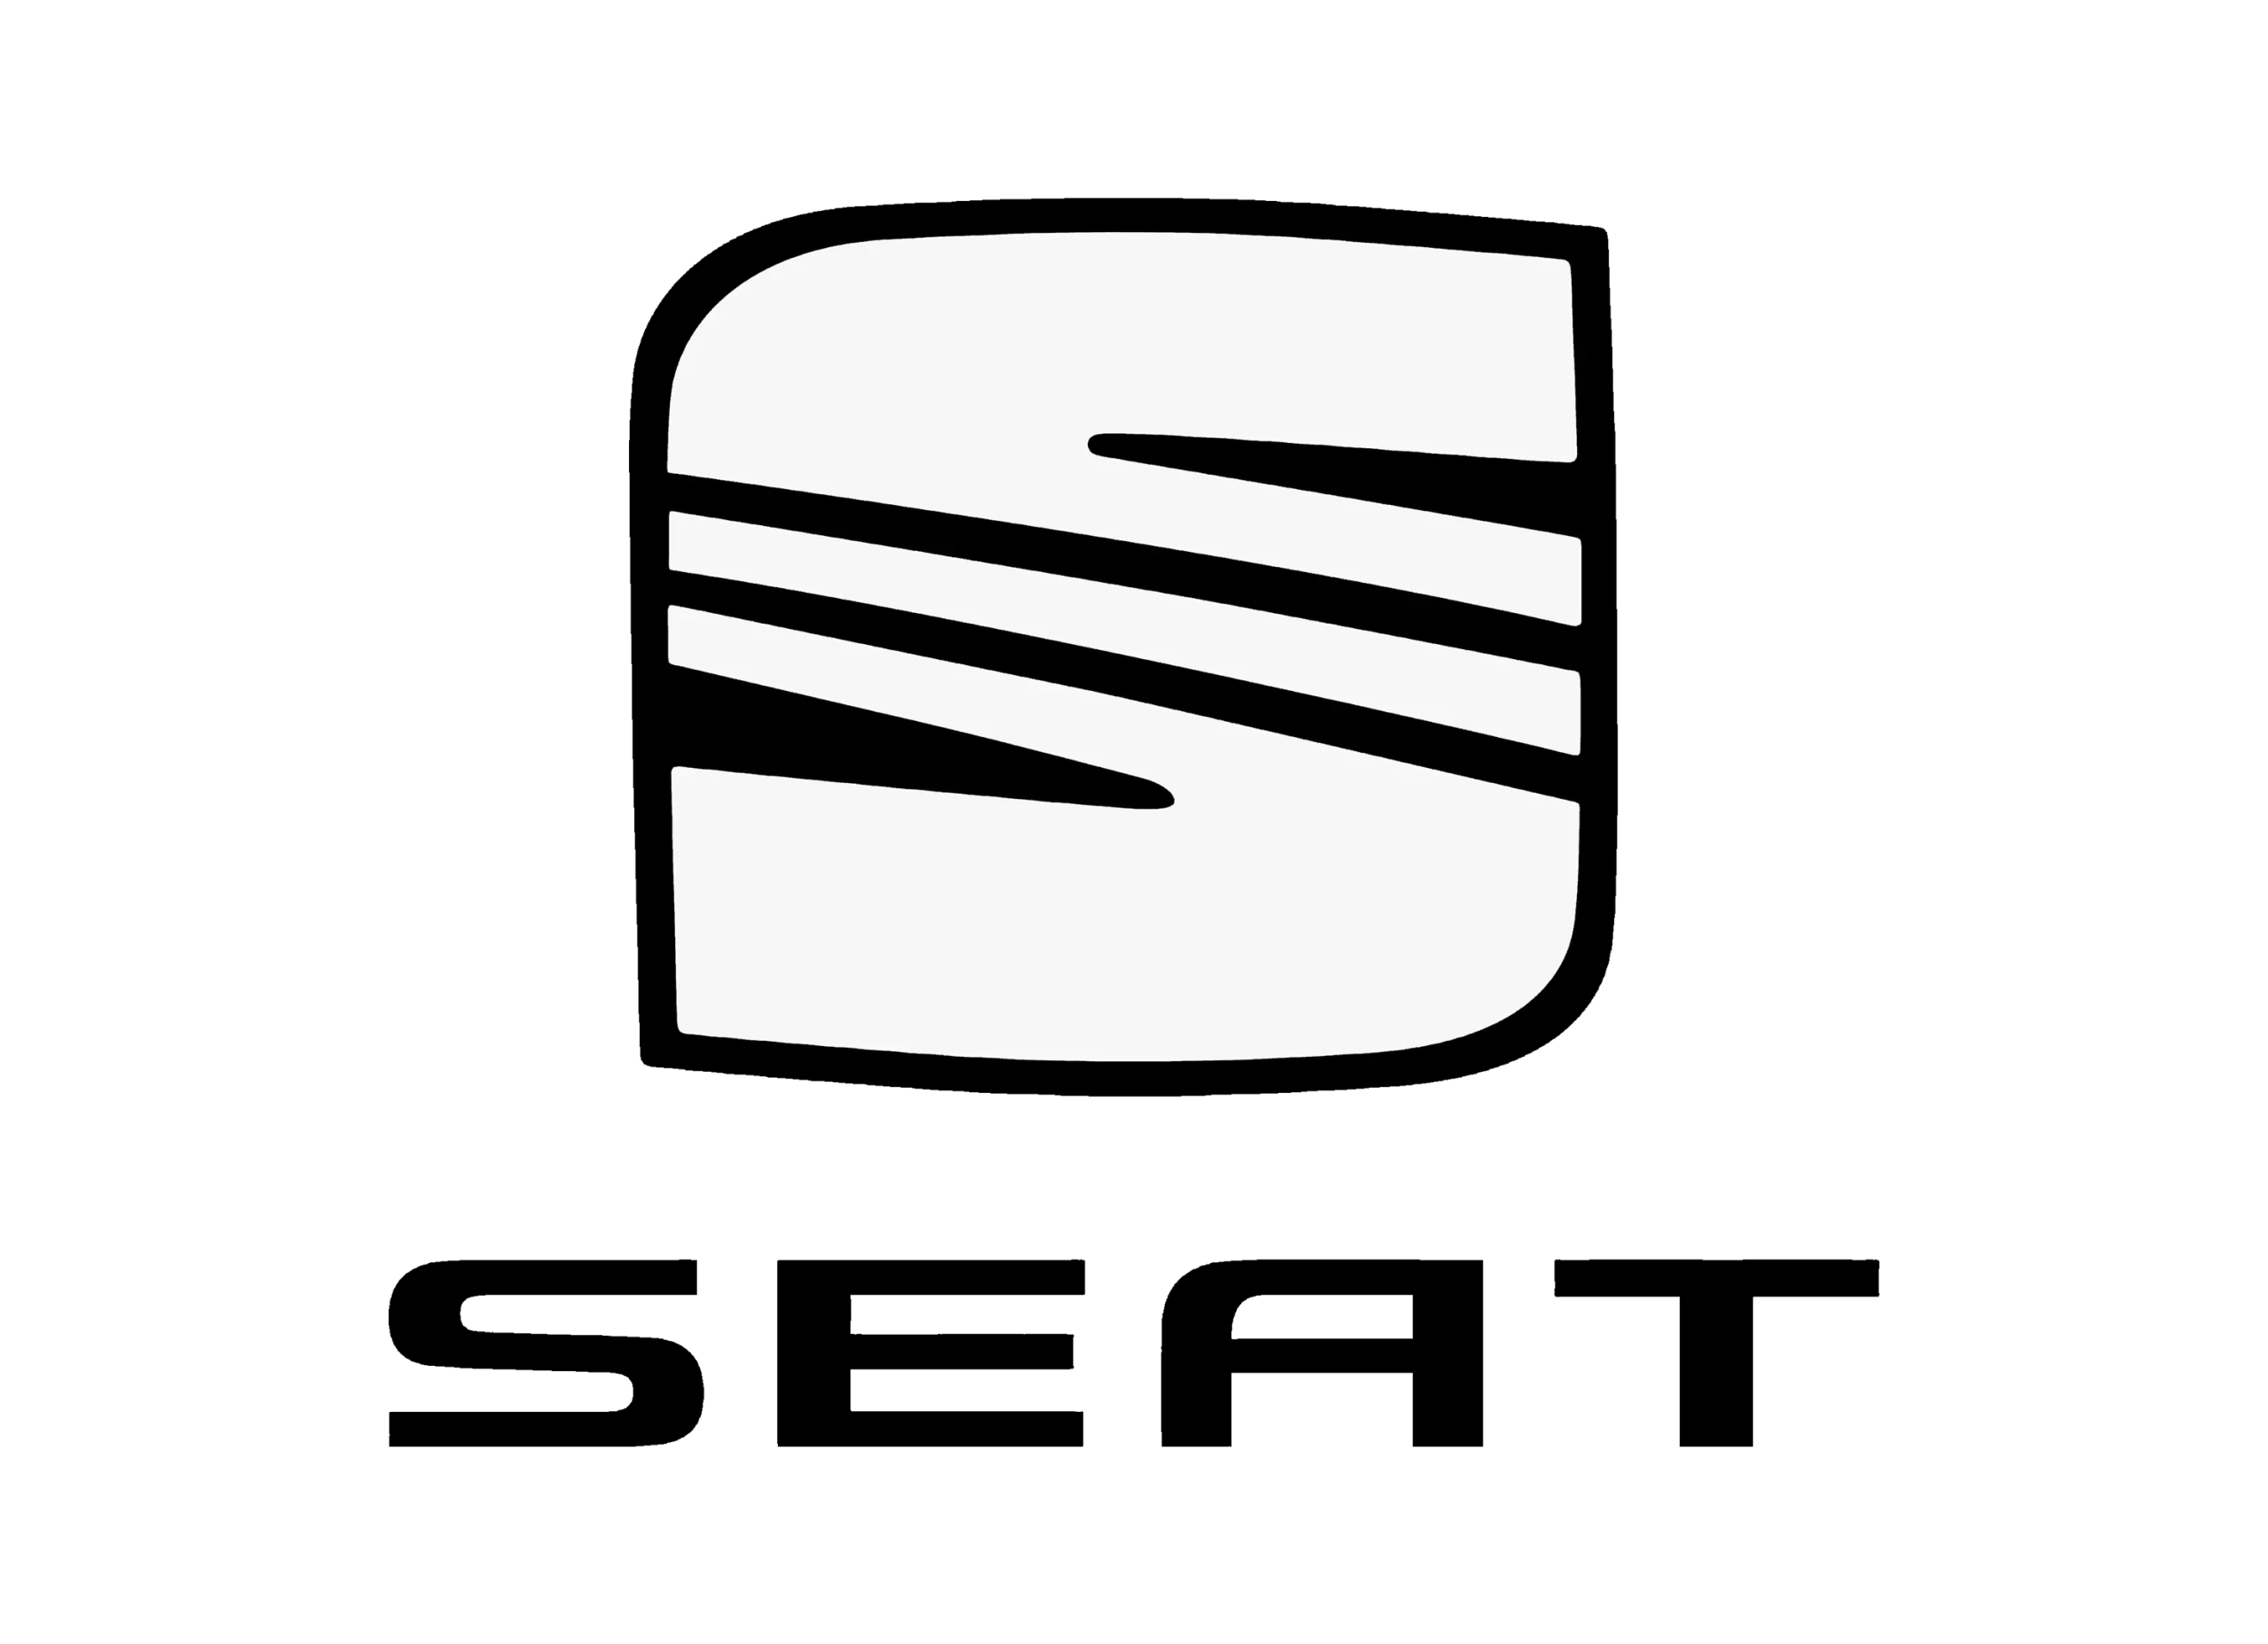 Seat logo